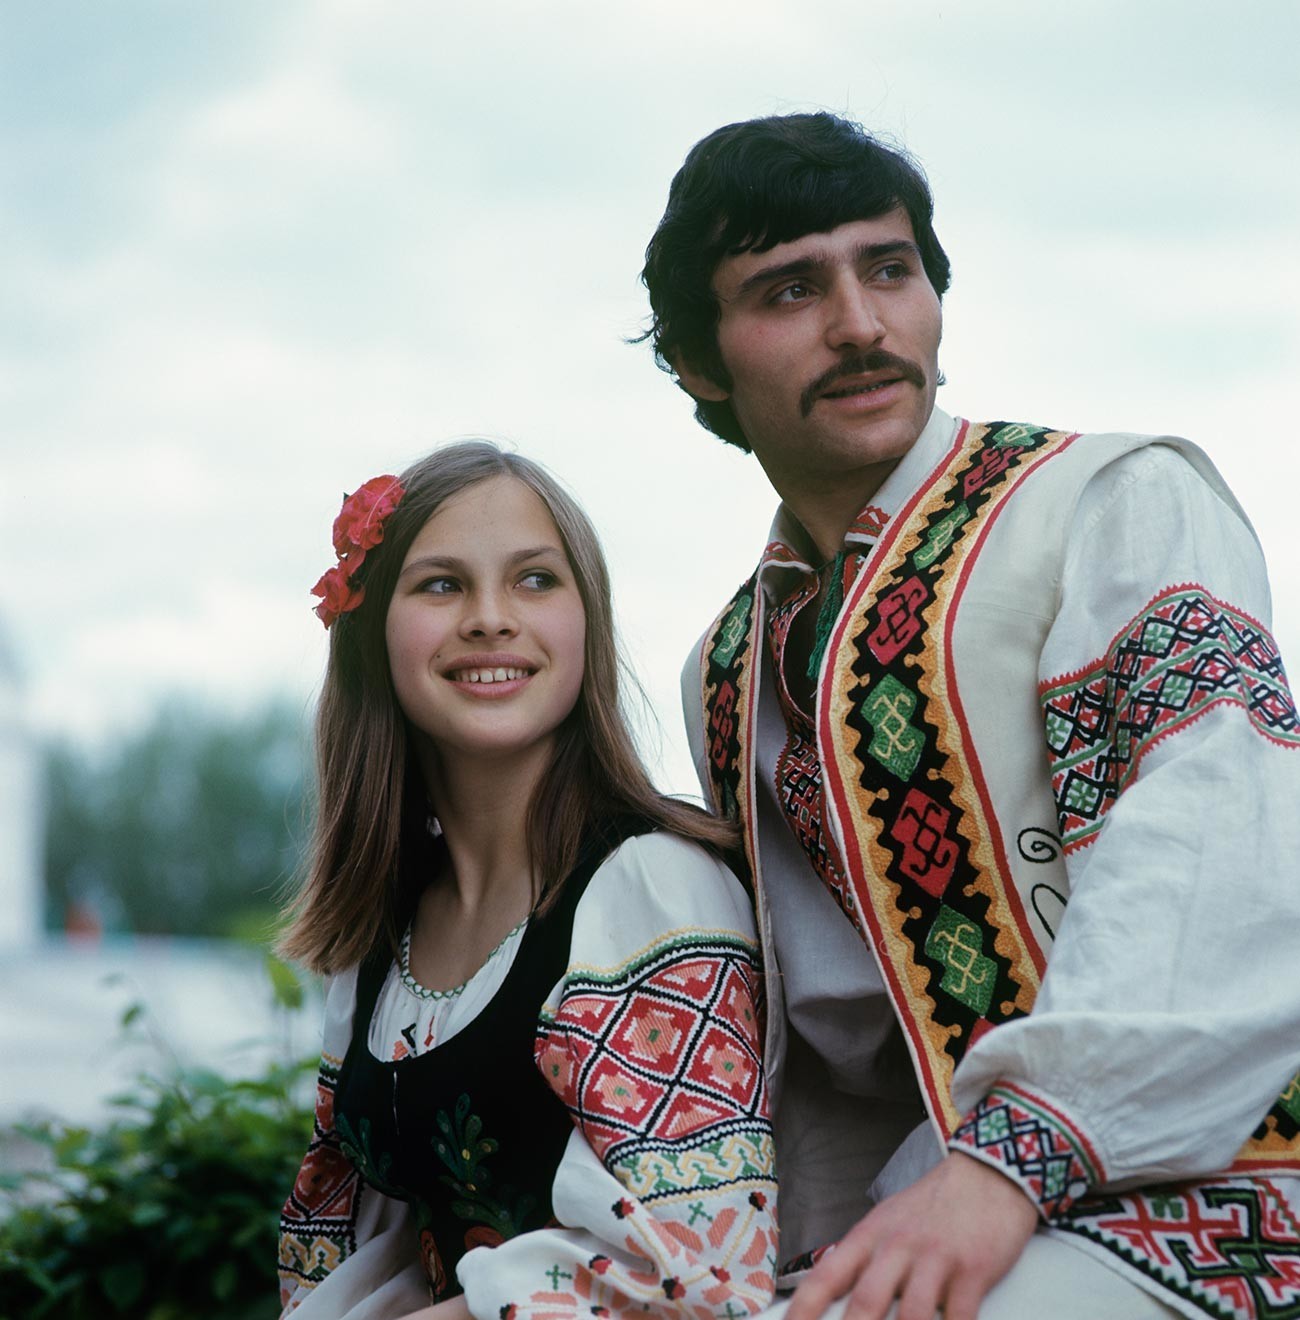 Membros do grupo de dança folclórica da Moldavanesca, 1975